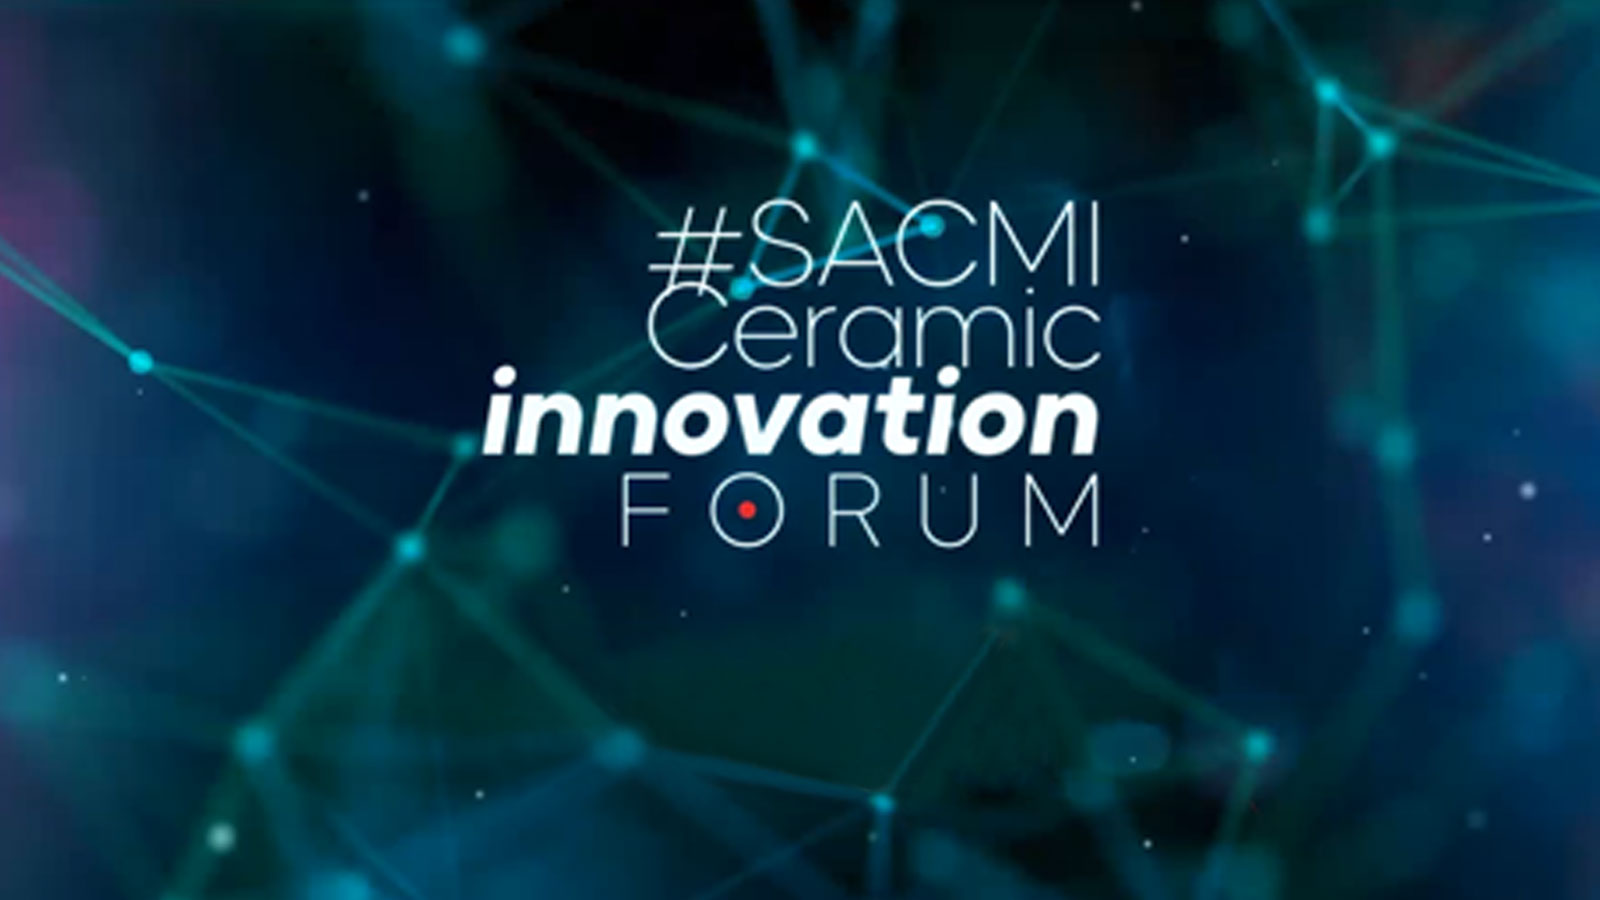 1) Ceramic Innovation Forum 2020